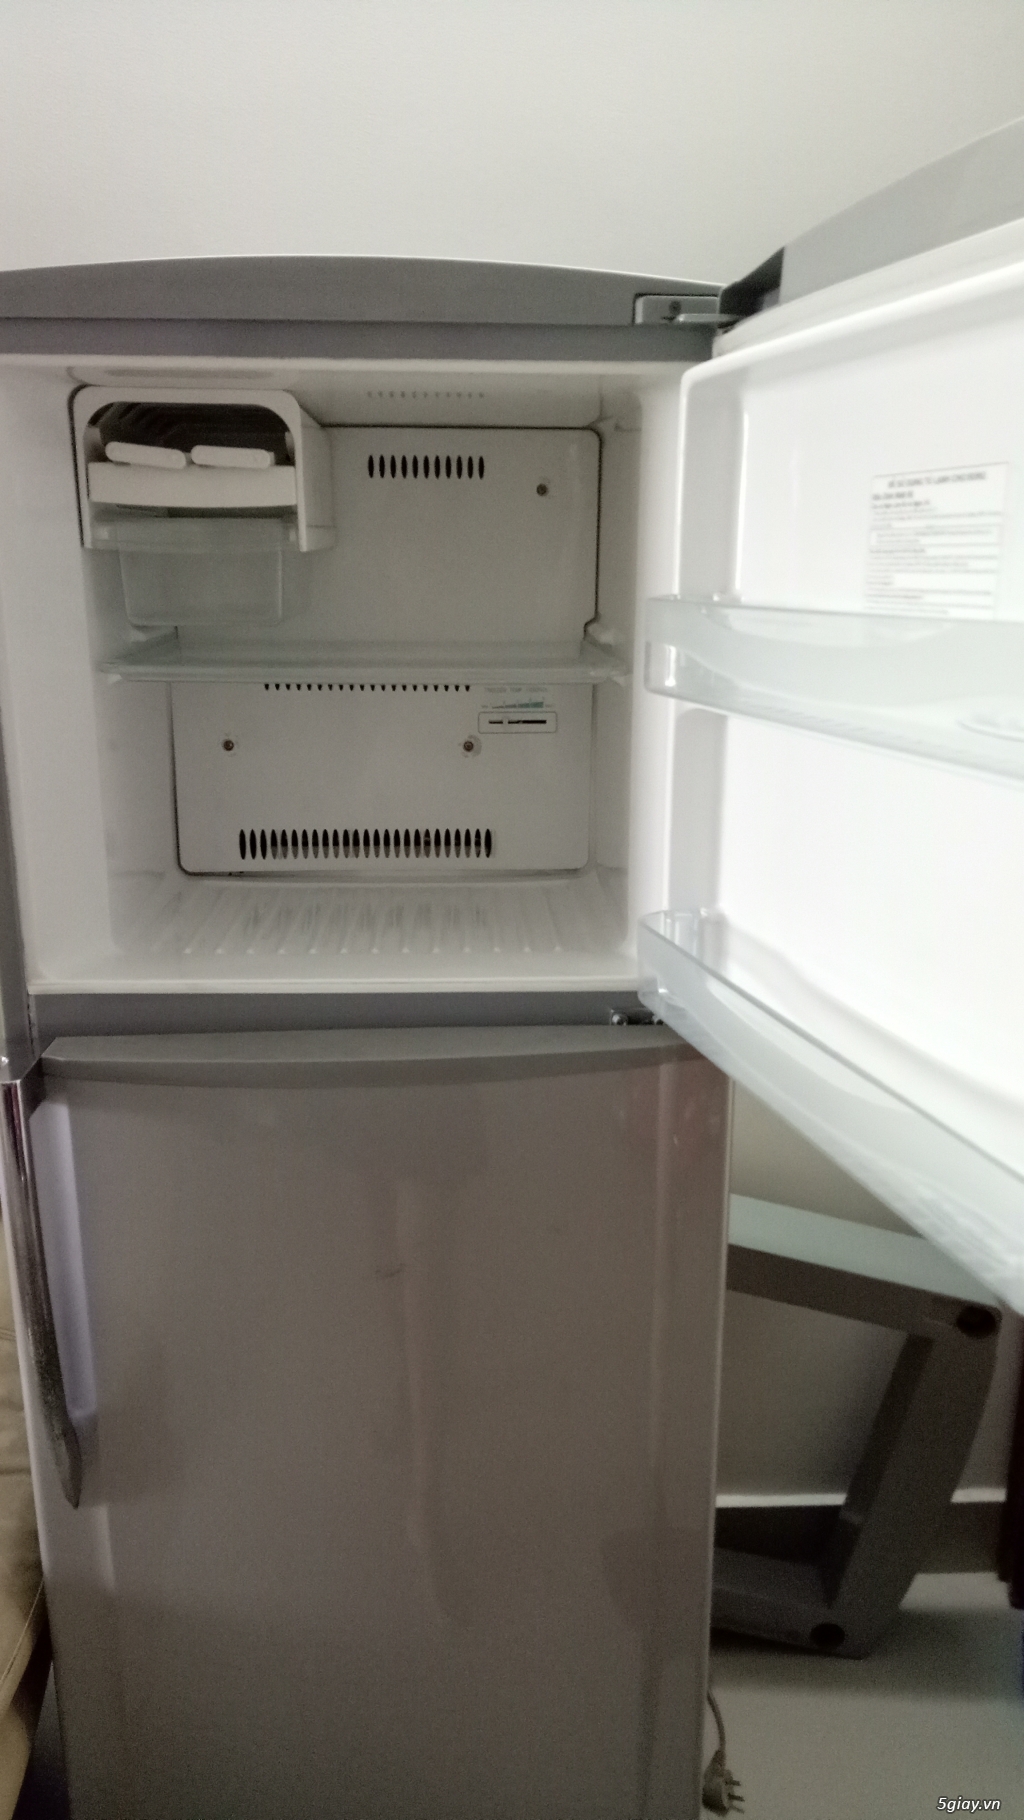 Thanh lý tủ lạnh Tosiba 230 lít - 2